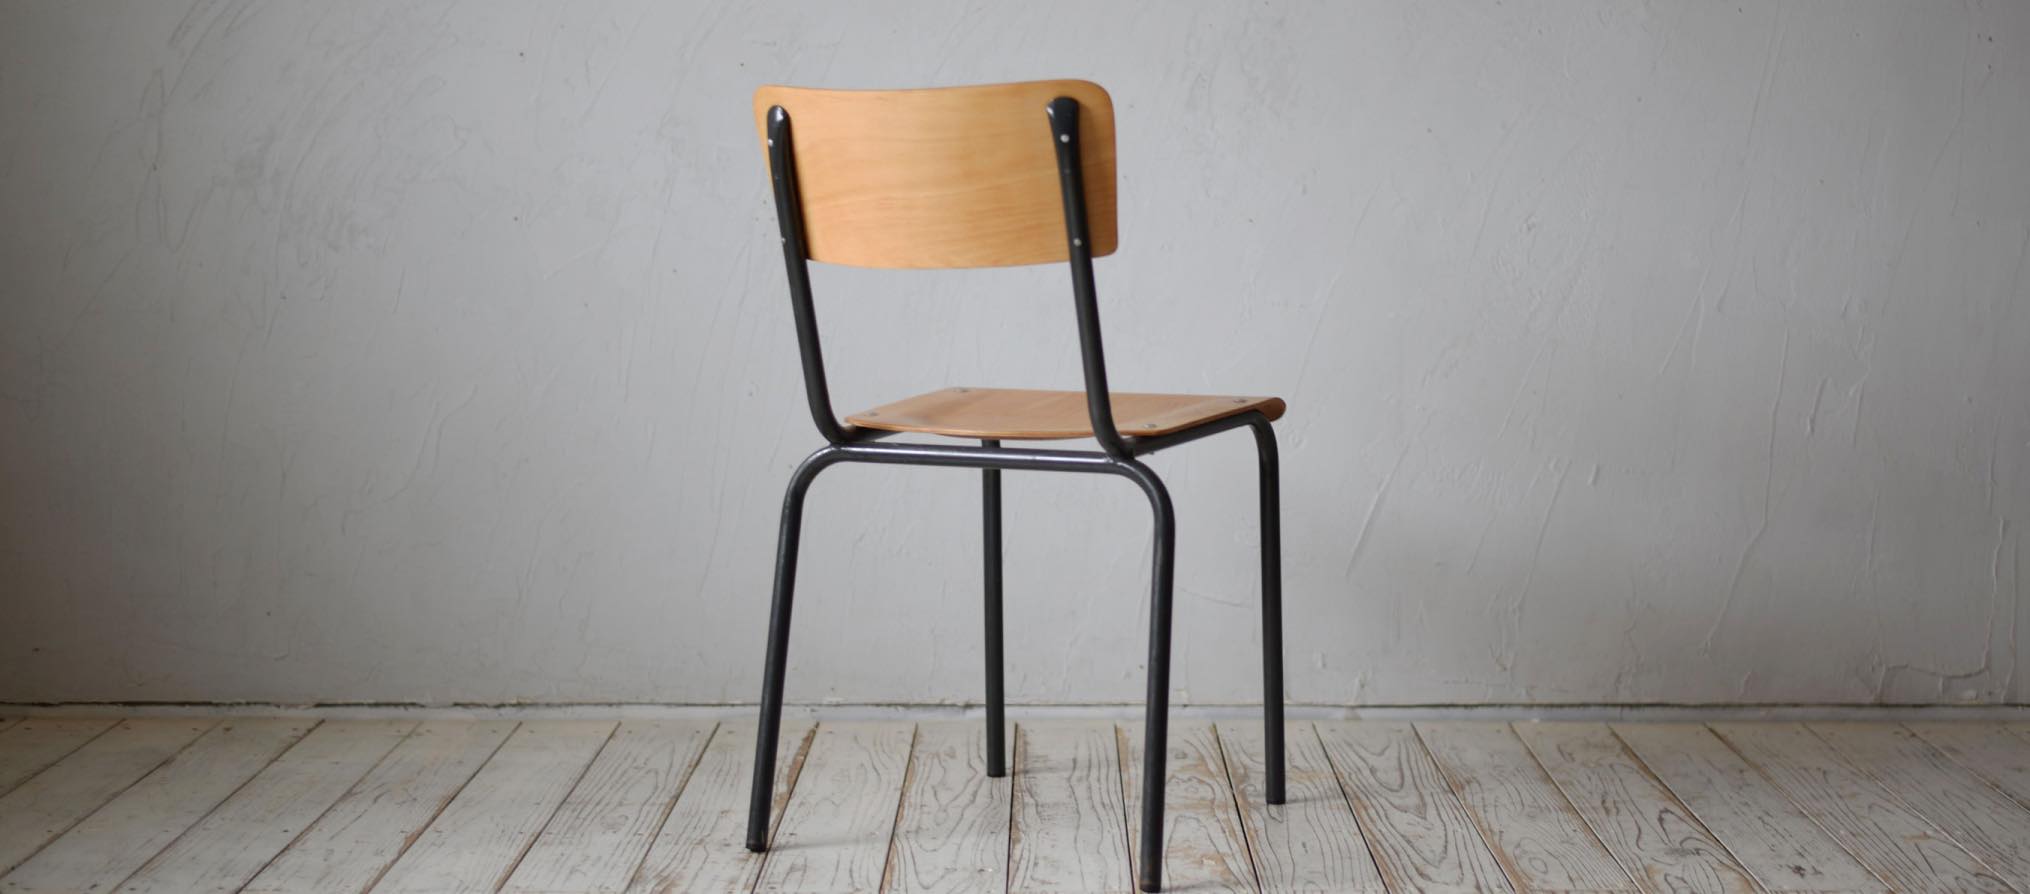 School Chair D-705D500C_デザイン